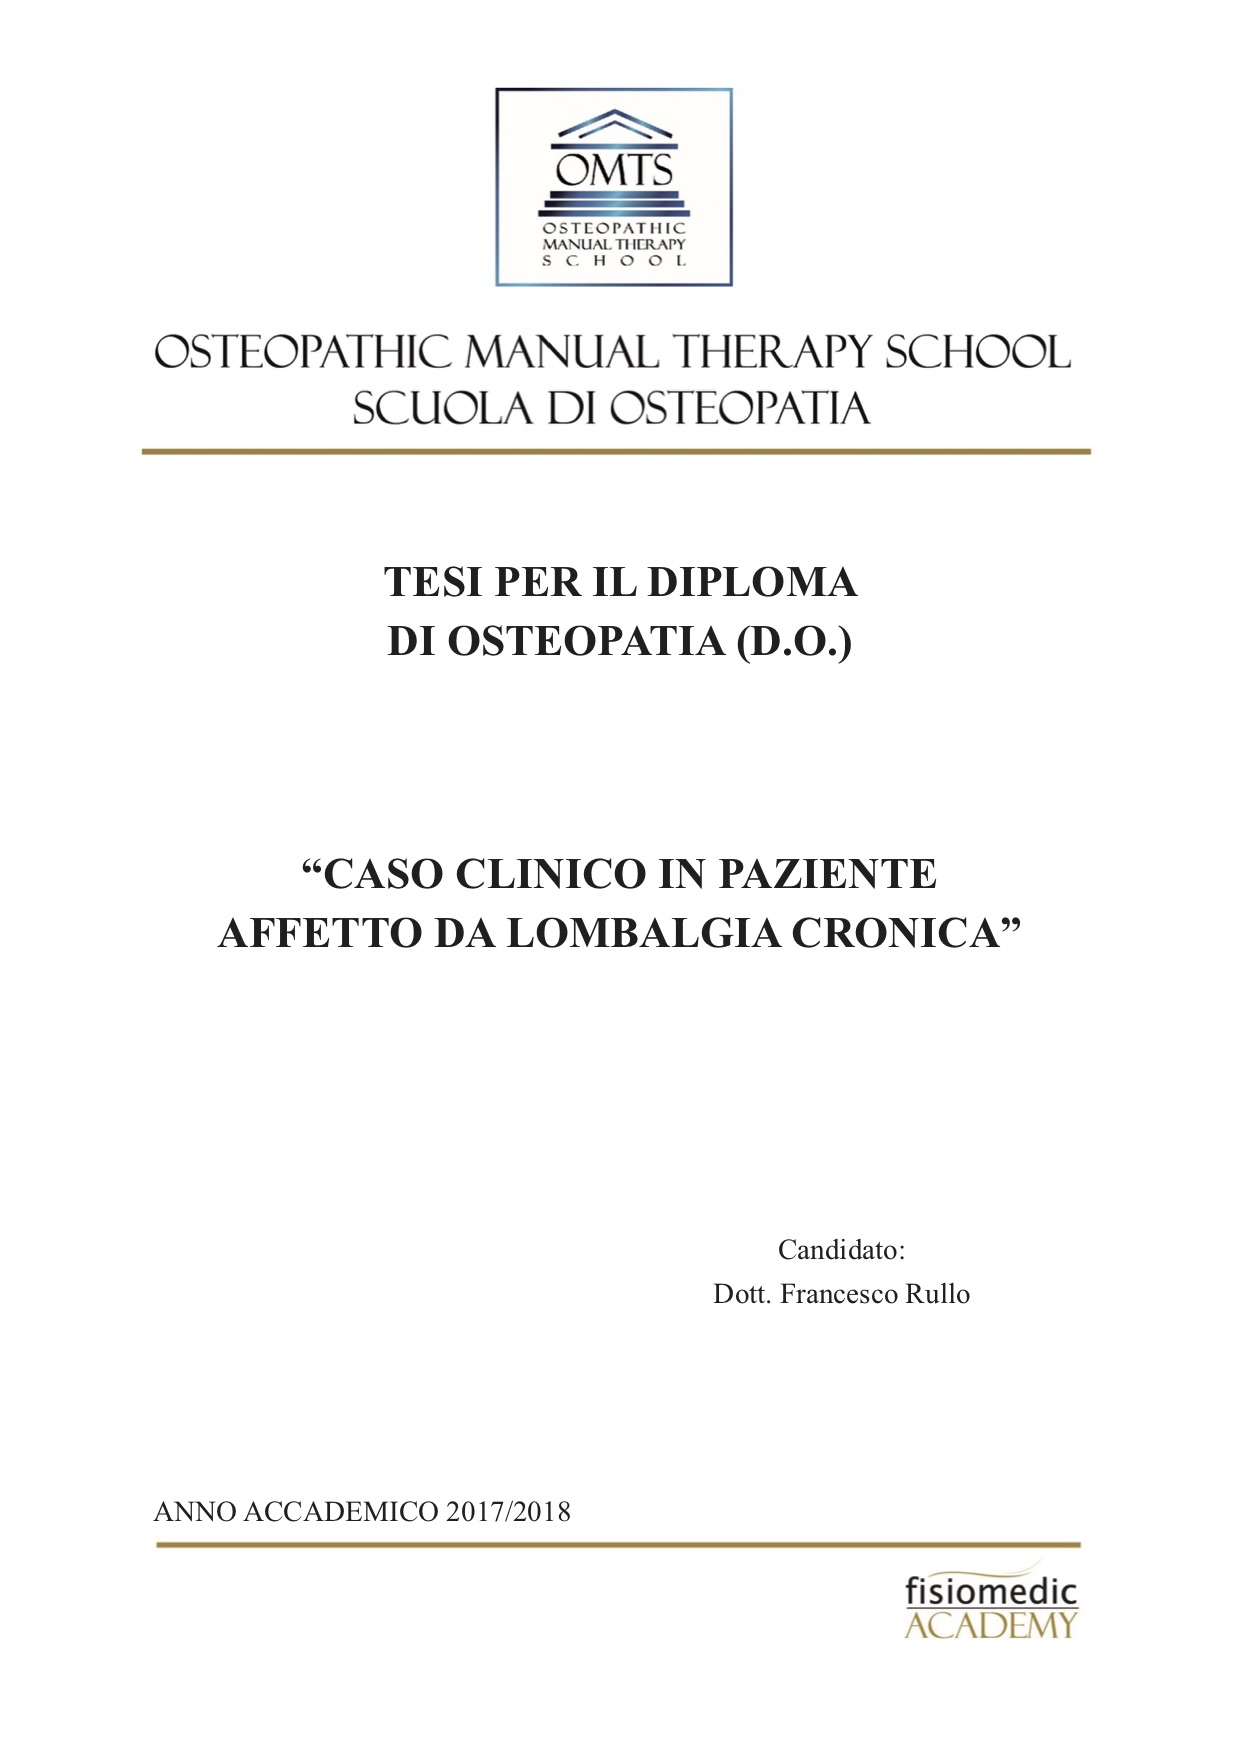 Francesco Rullo Tesi Diploma Osteopatia 2018